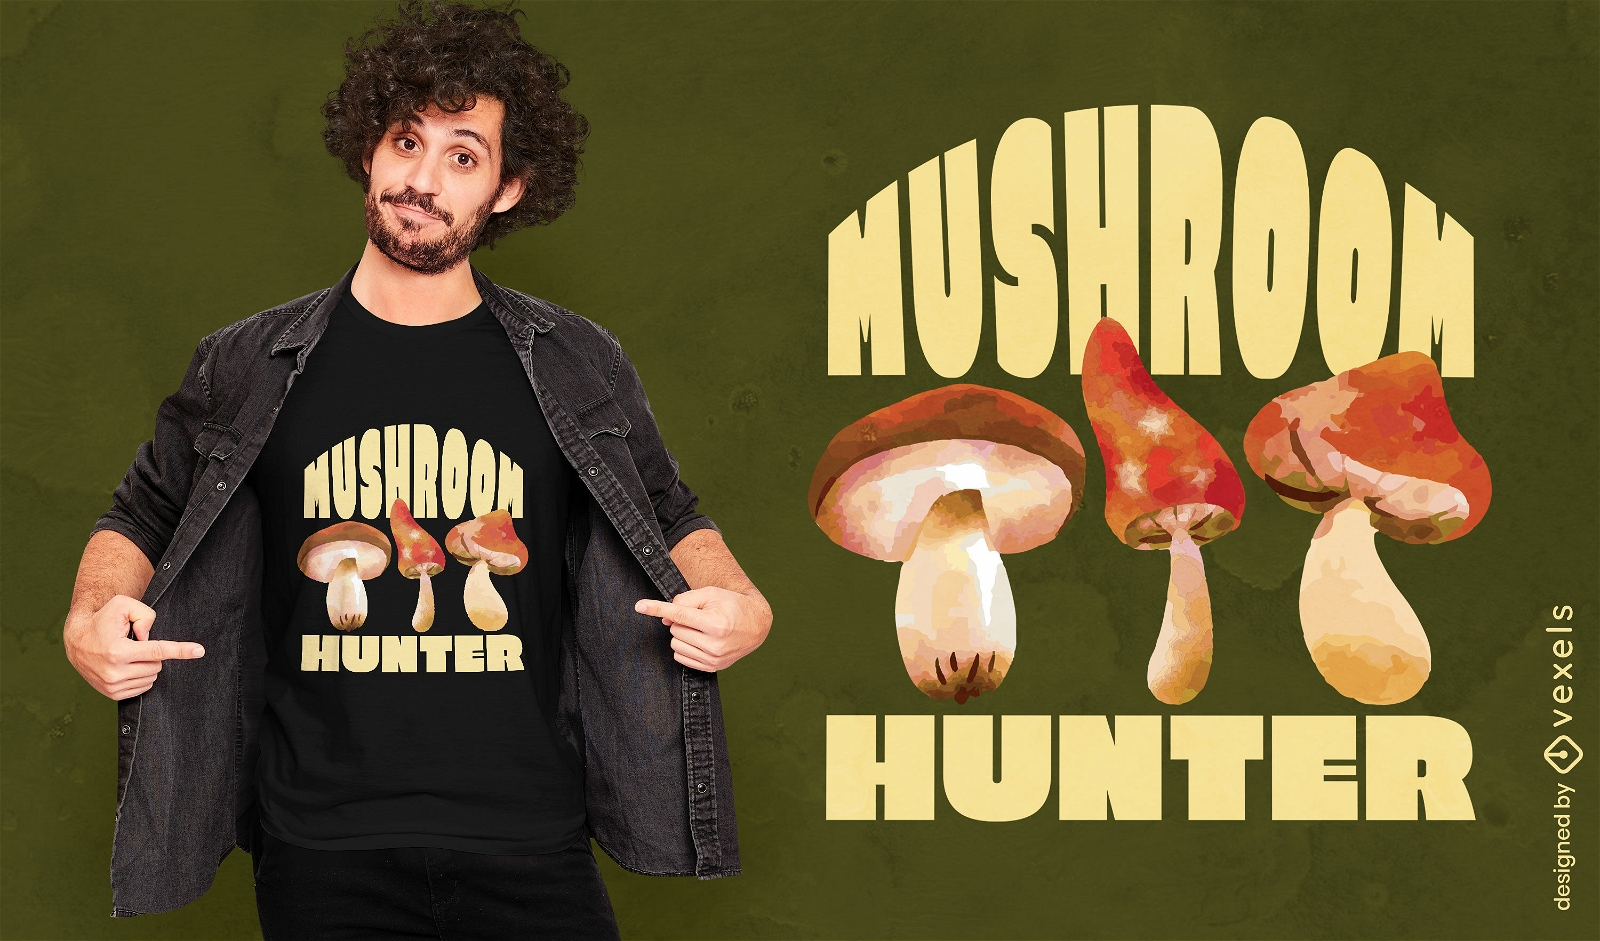 Mushroom hunter t-shirt design